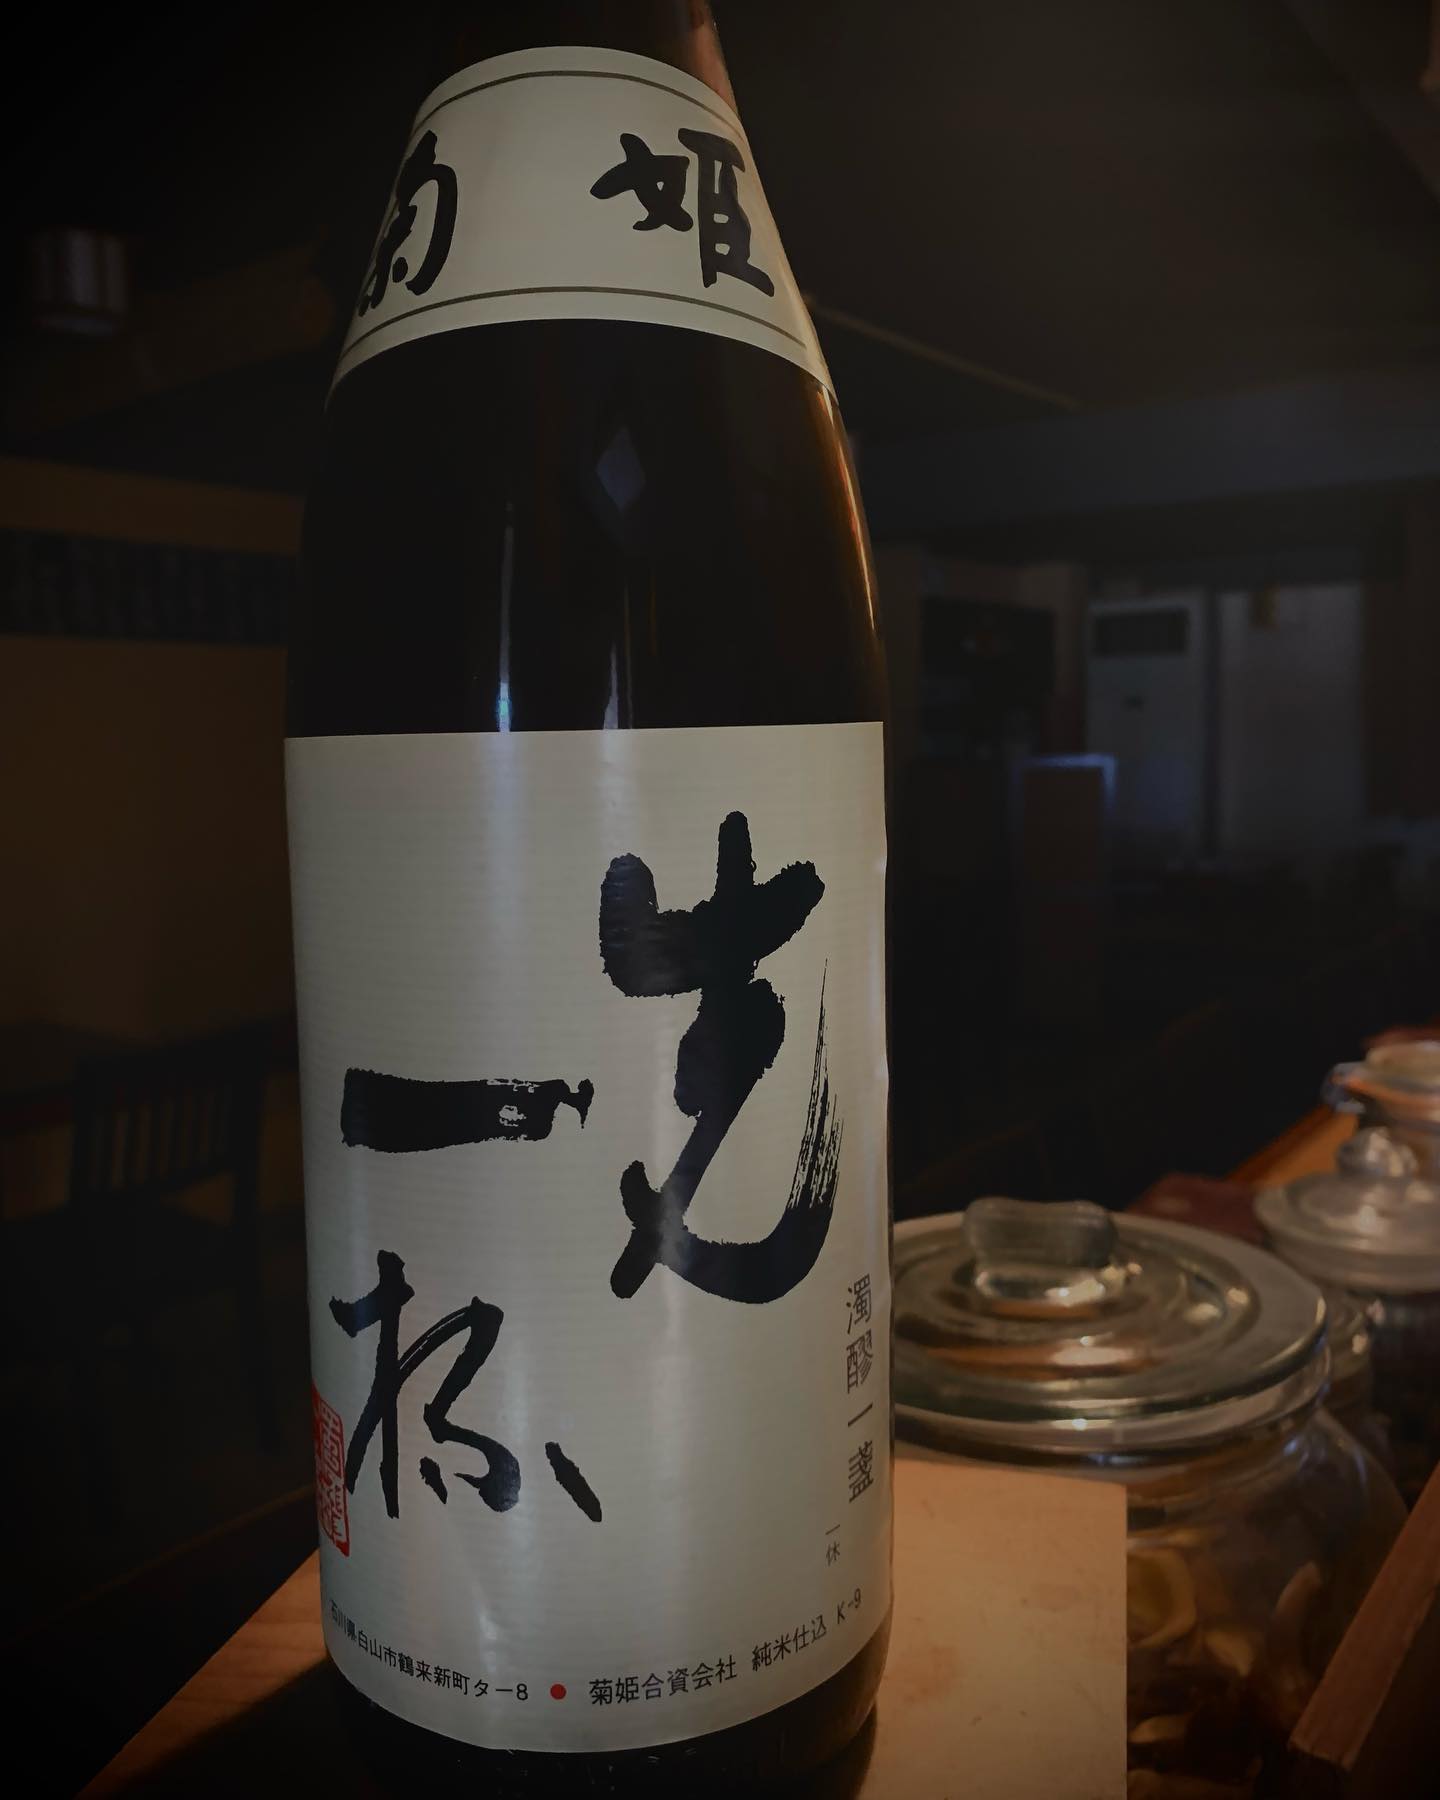 本日の日本酒紹介️
「菊姫」
この日本酒は香りが強いのが特徴なんですが飲みあたりが軽やかで飲みやすい純米酒
どんなものにも合わせやすい食中酒のオールラウンダーです🥃
   #